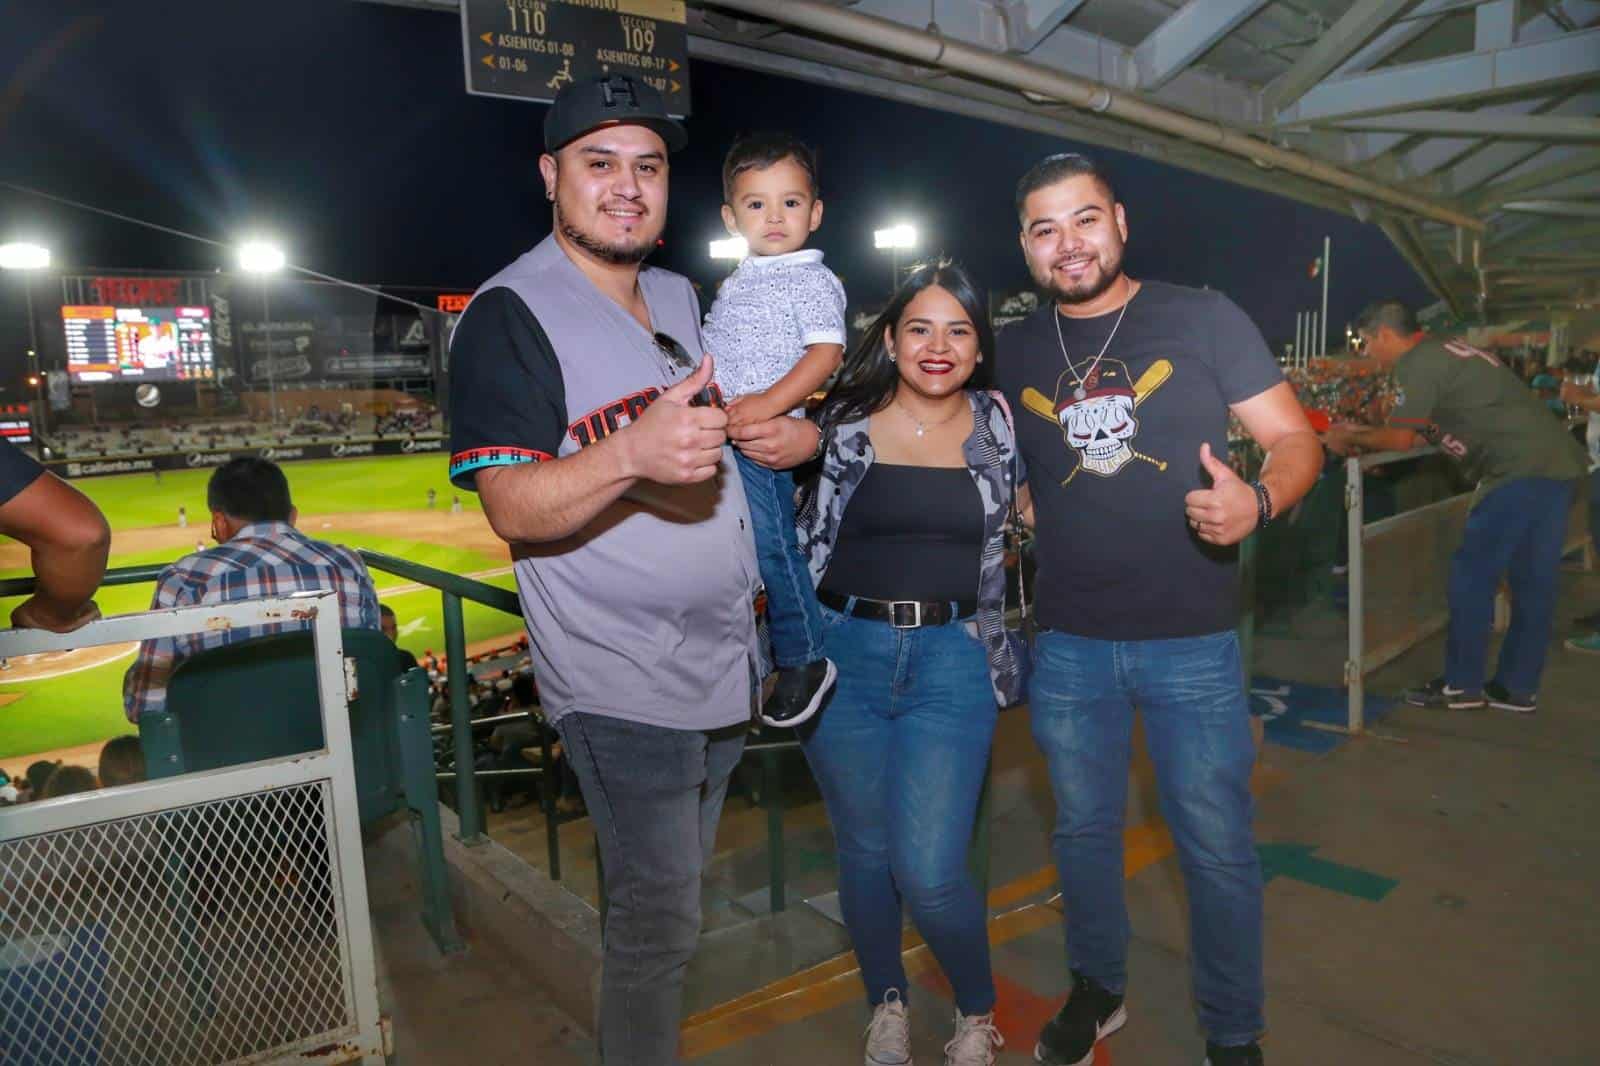 Viven la fiesta beisbolera en el estadio Fernando Valenzuela